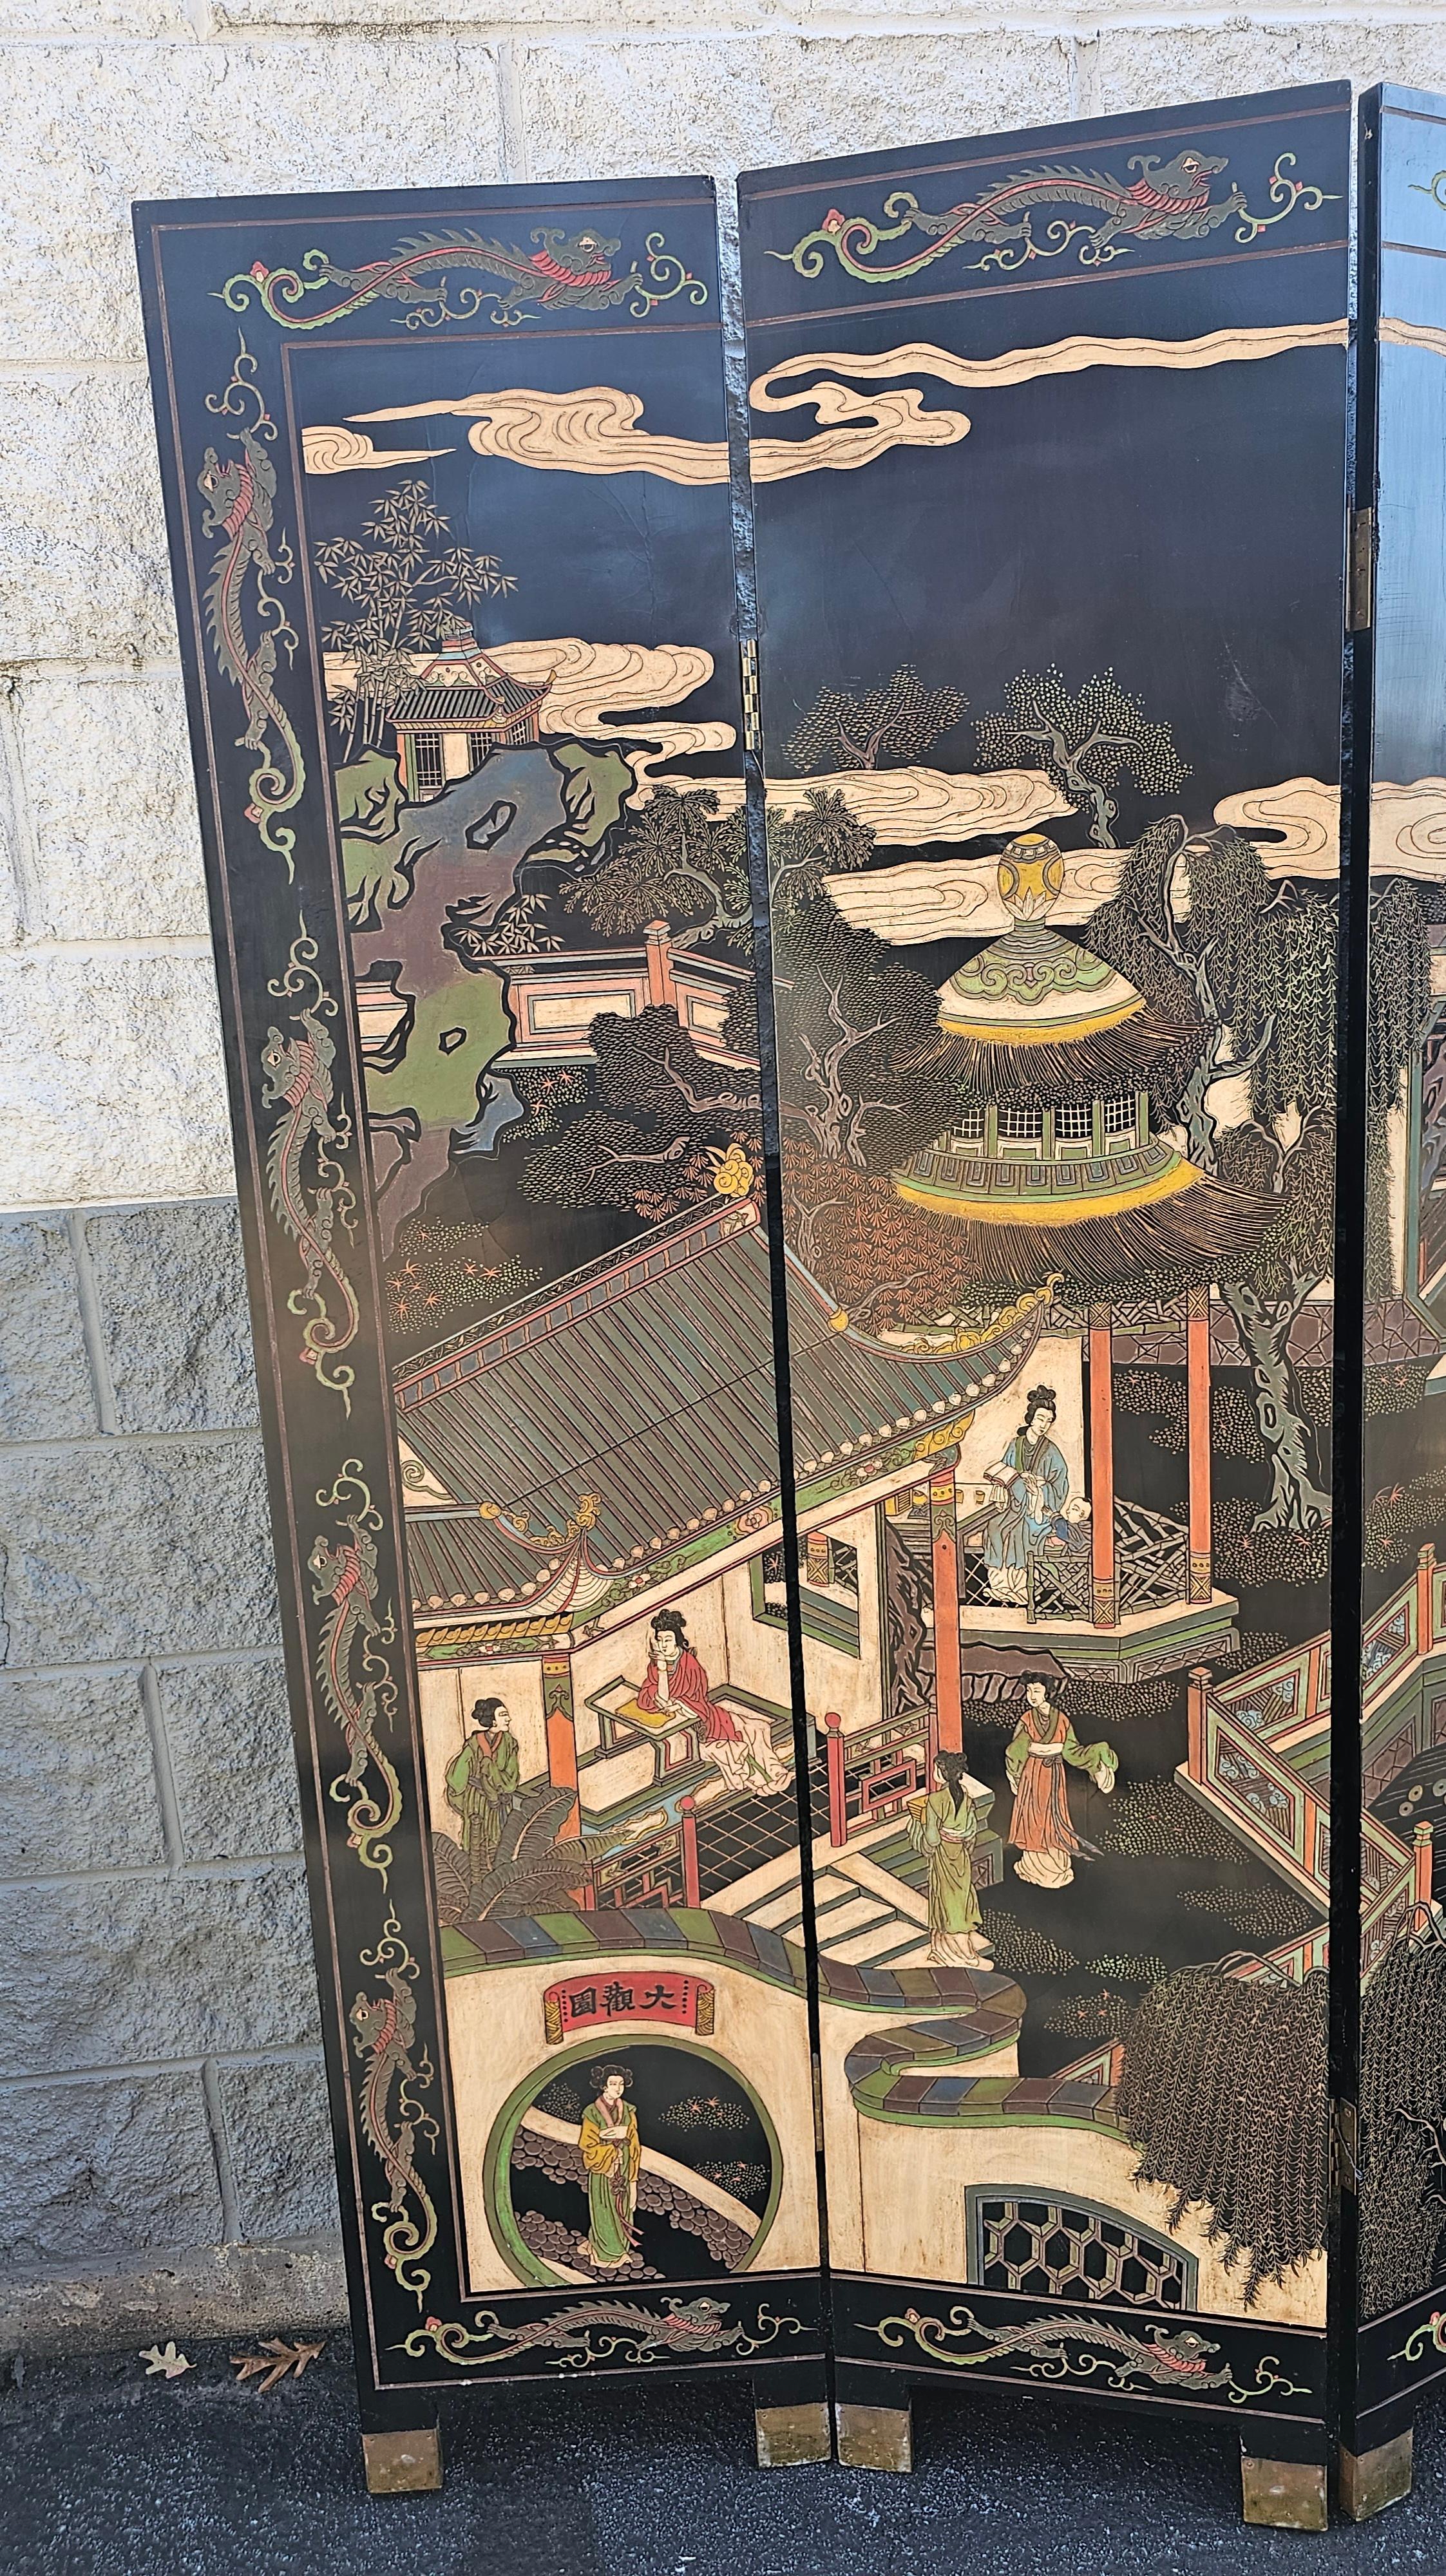 Paravent ou séparateur de pièce chinois du milieu du 20e siècle, de type Foldes, gravé et peint. Exclusivement fabriqué par Imperial East New York
Mesure 96